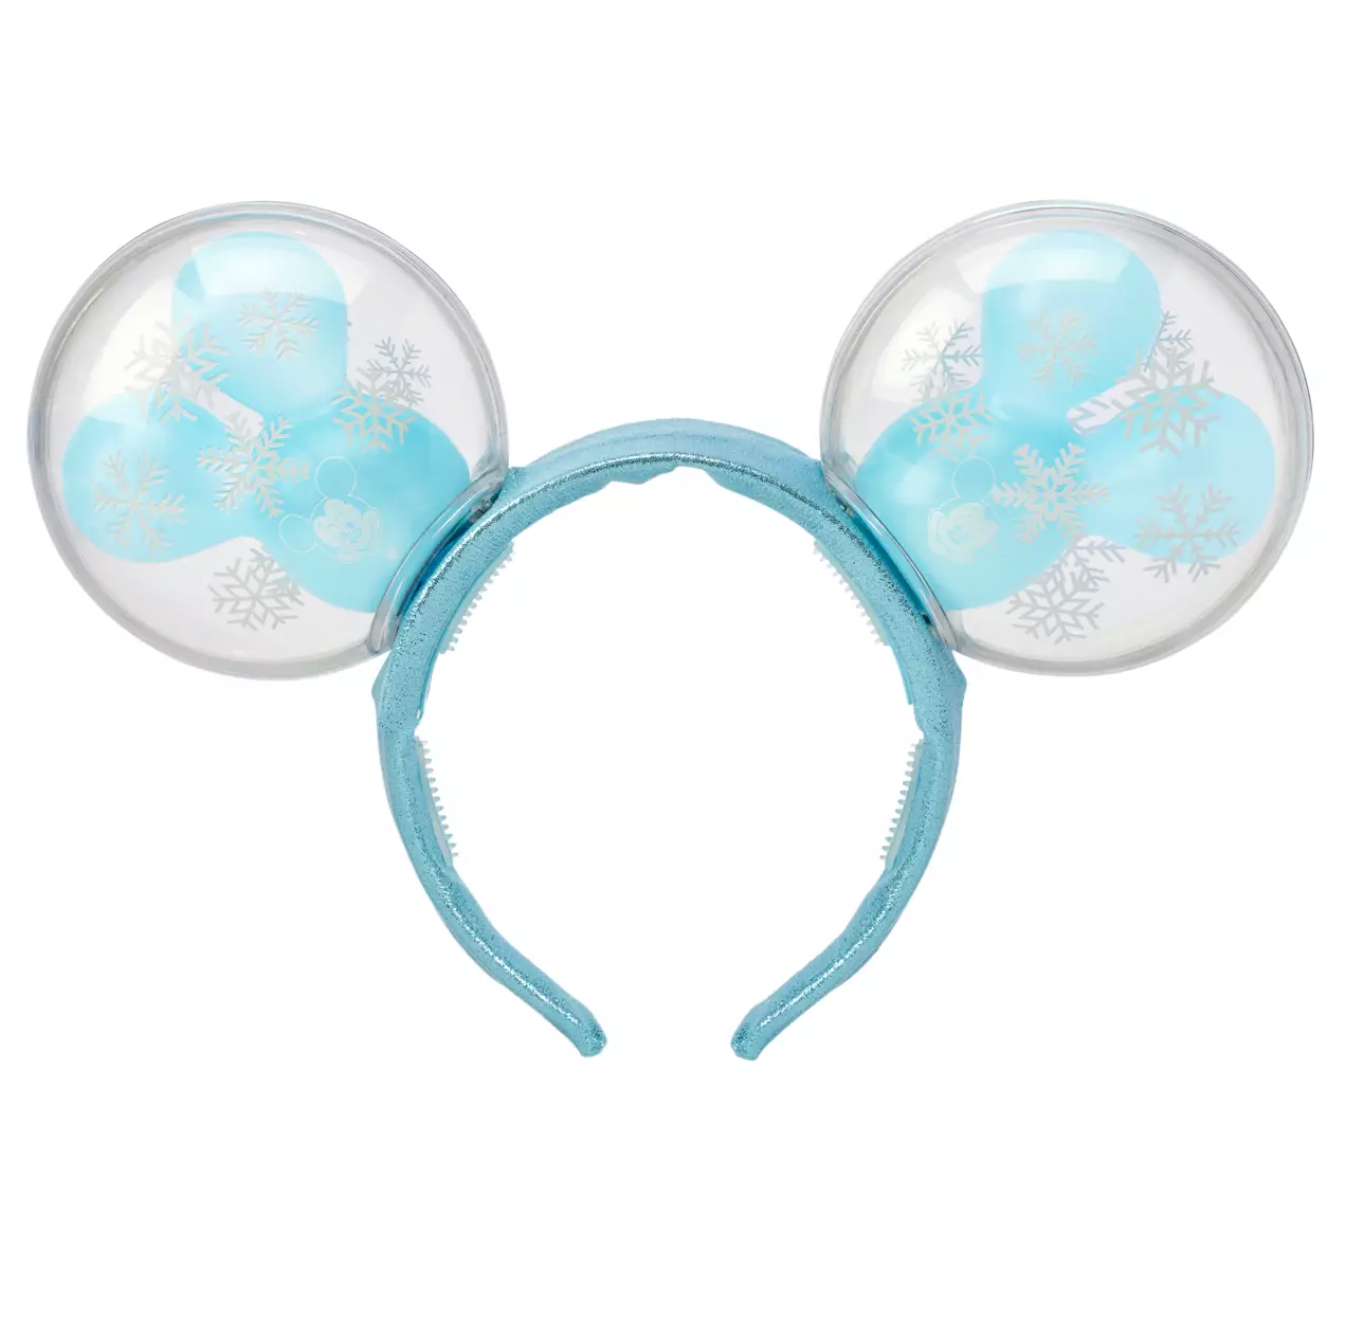 Disney Christmas Holiday Mickey Snowflake Balloon Light-Up Ears Headband New